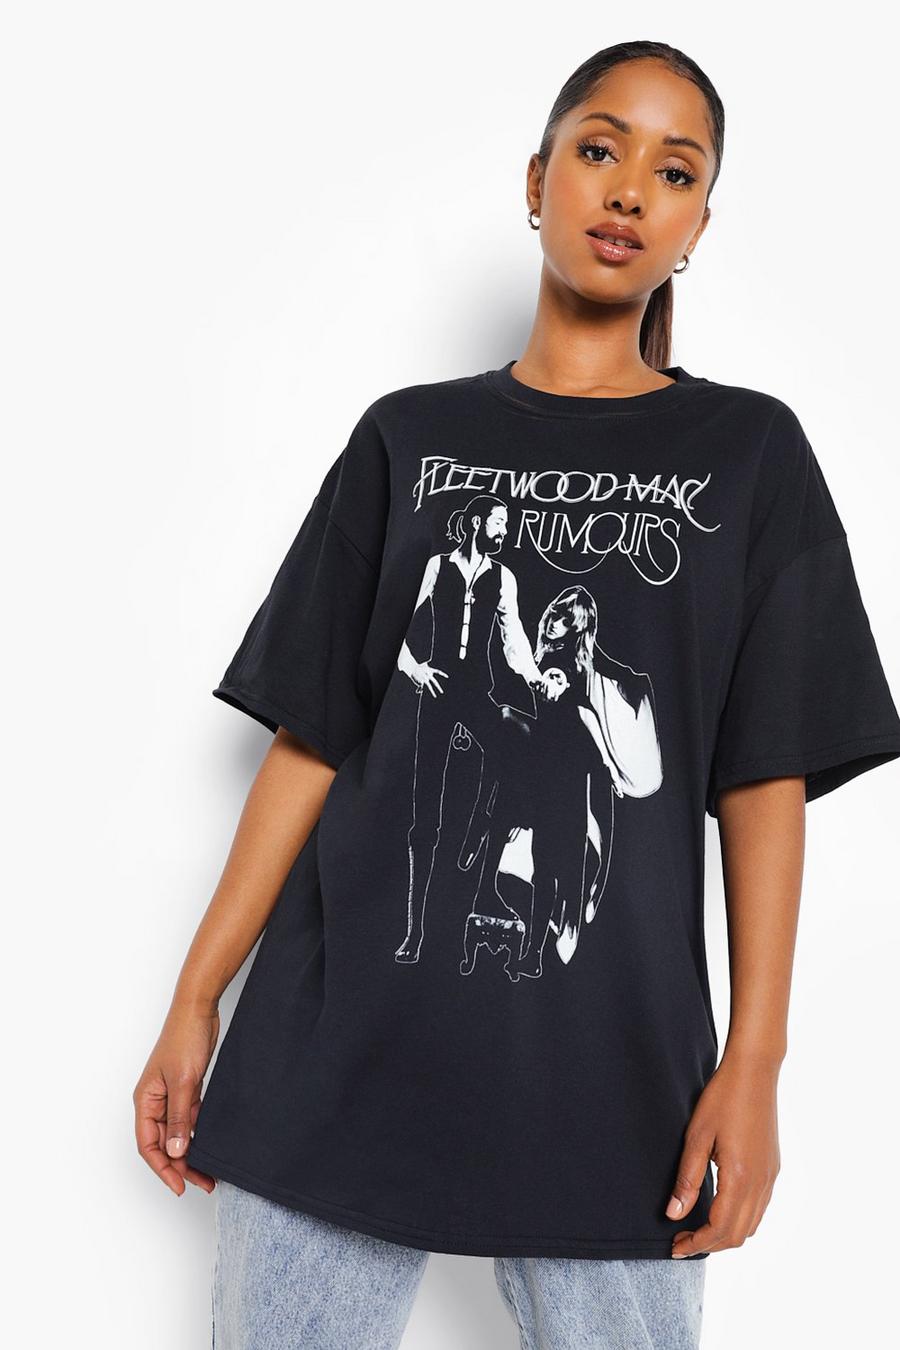 Camiseta Premamá con estampado de Fleetwood Mac, Negro